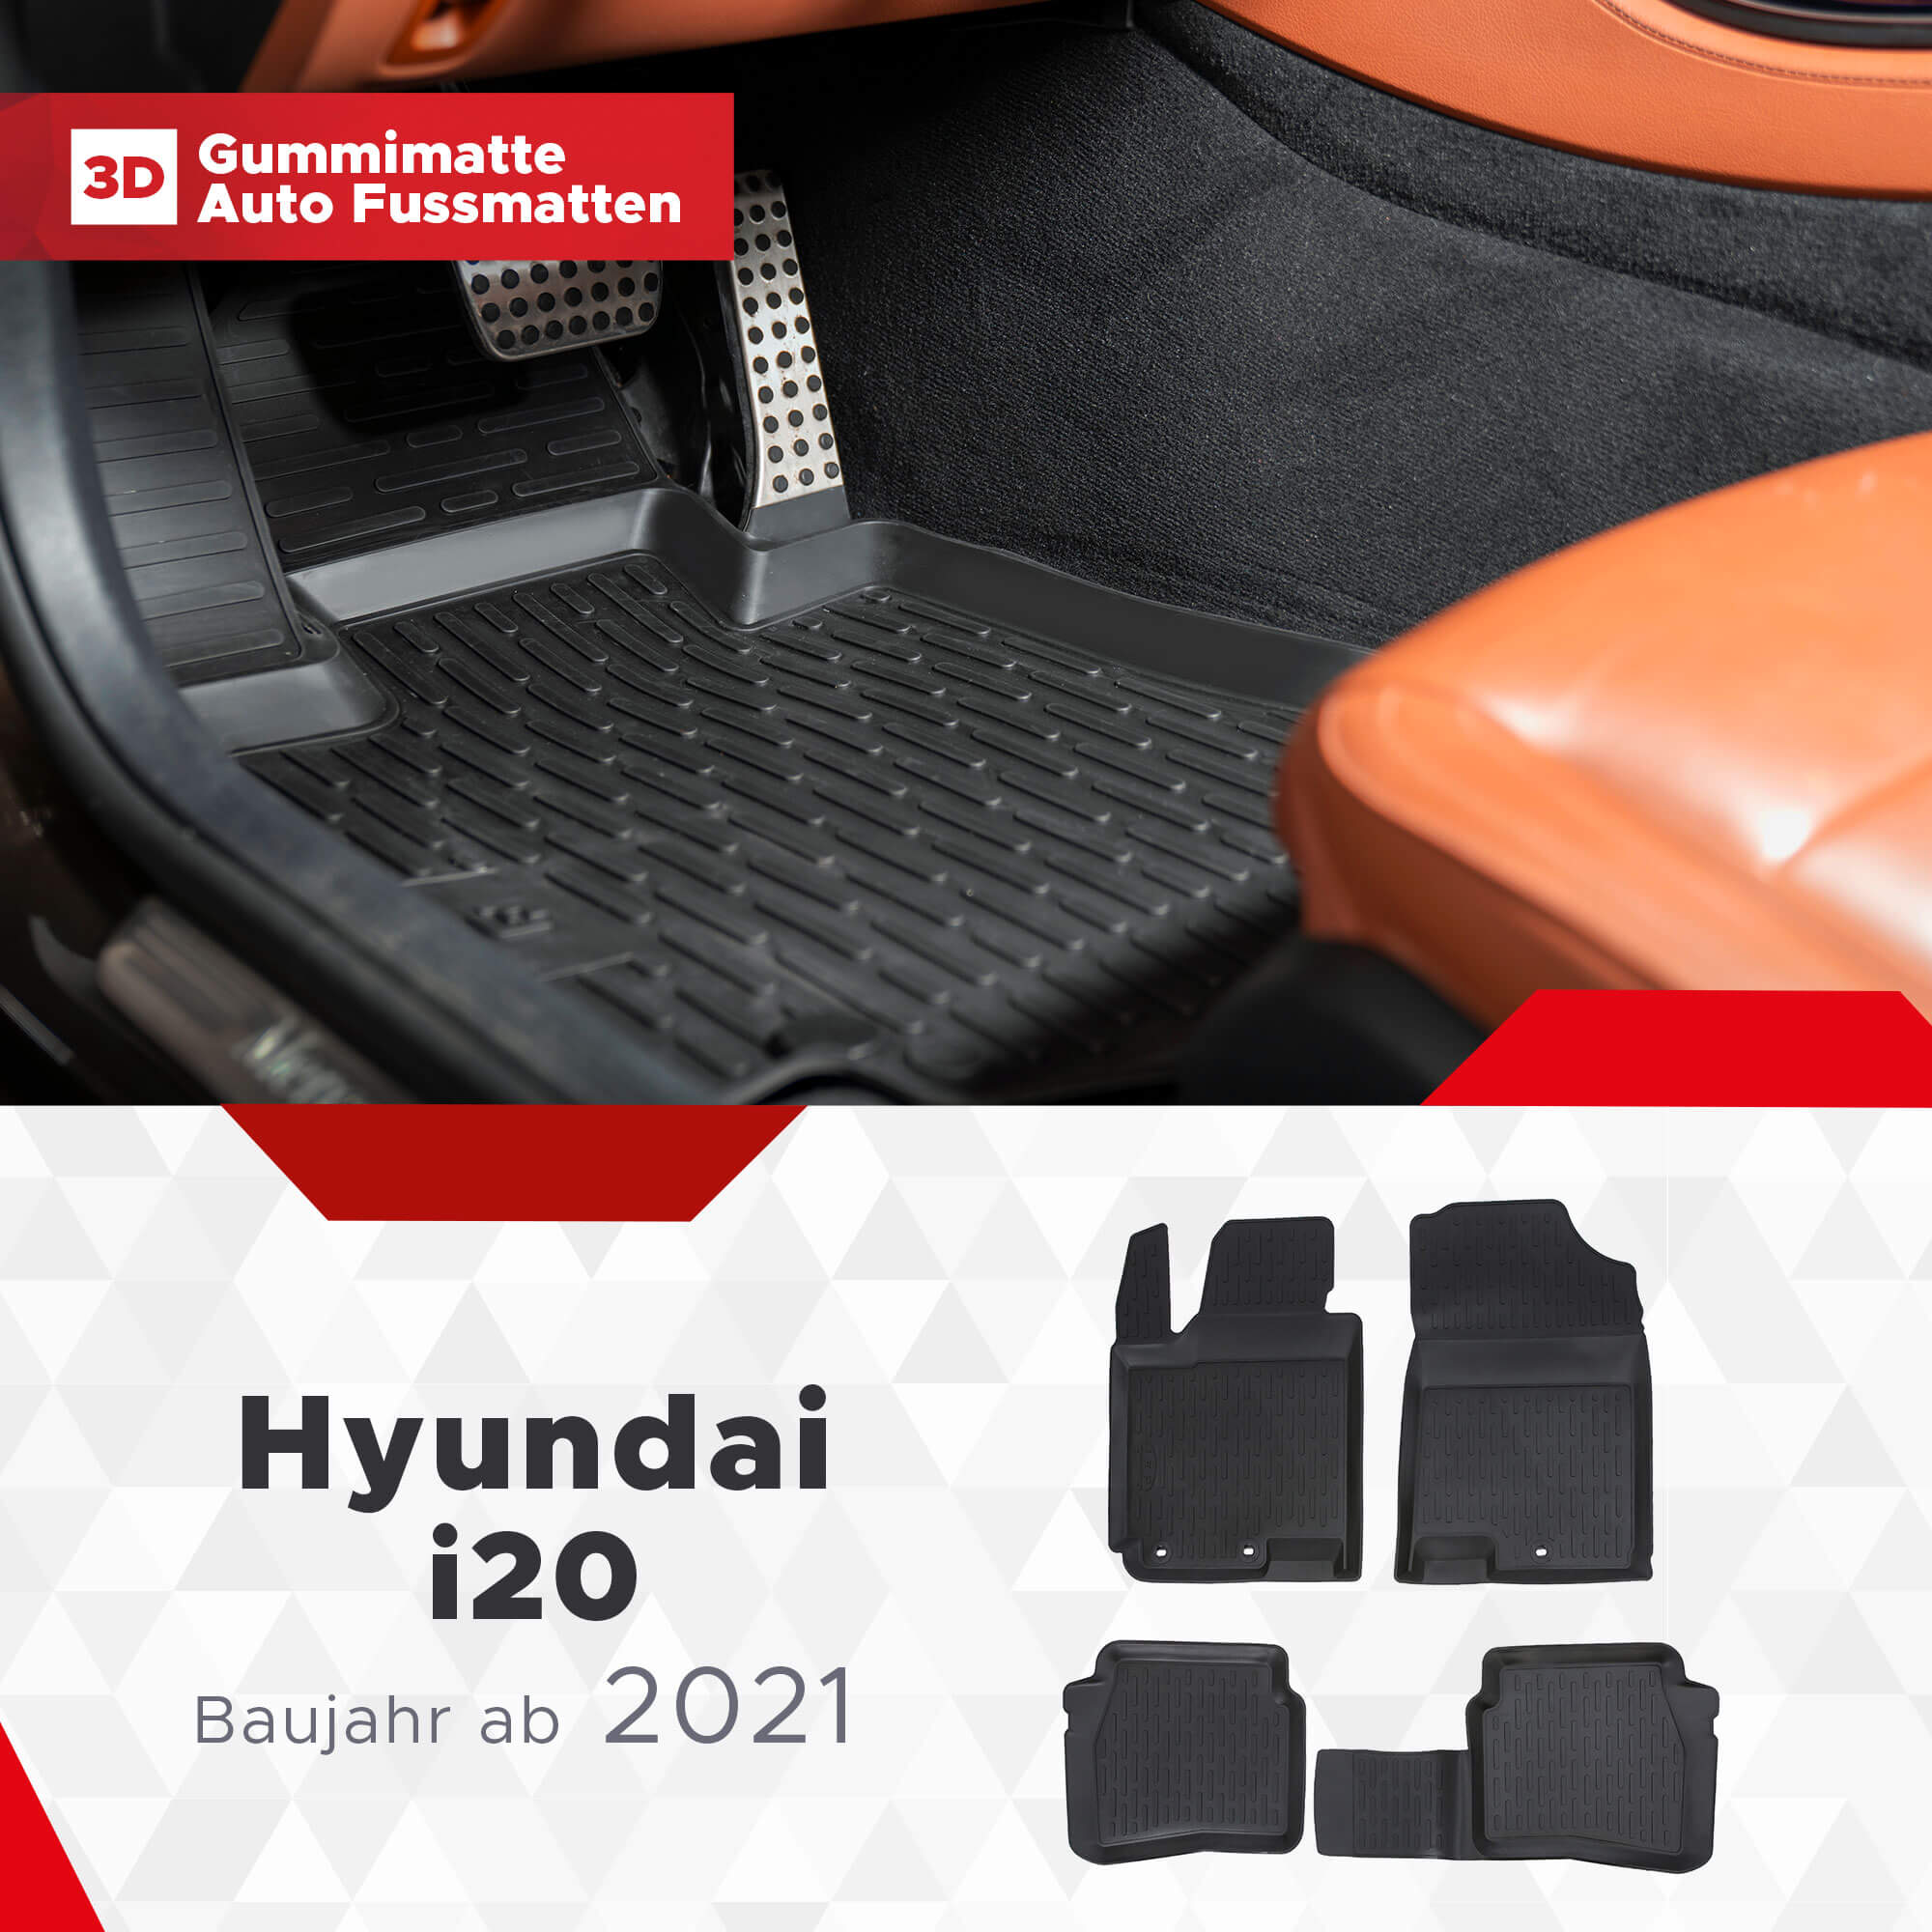 3D Fussmatten passend für Hyundai i20 ab 2021